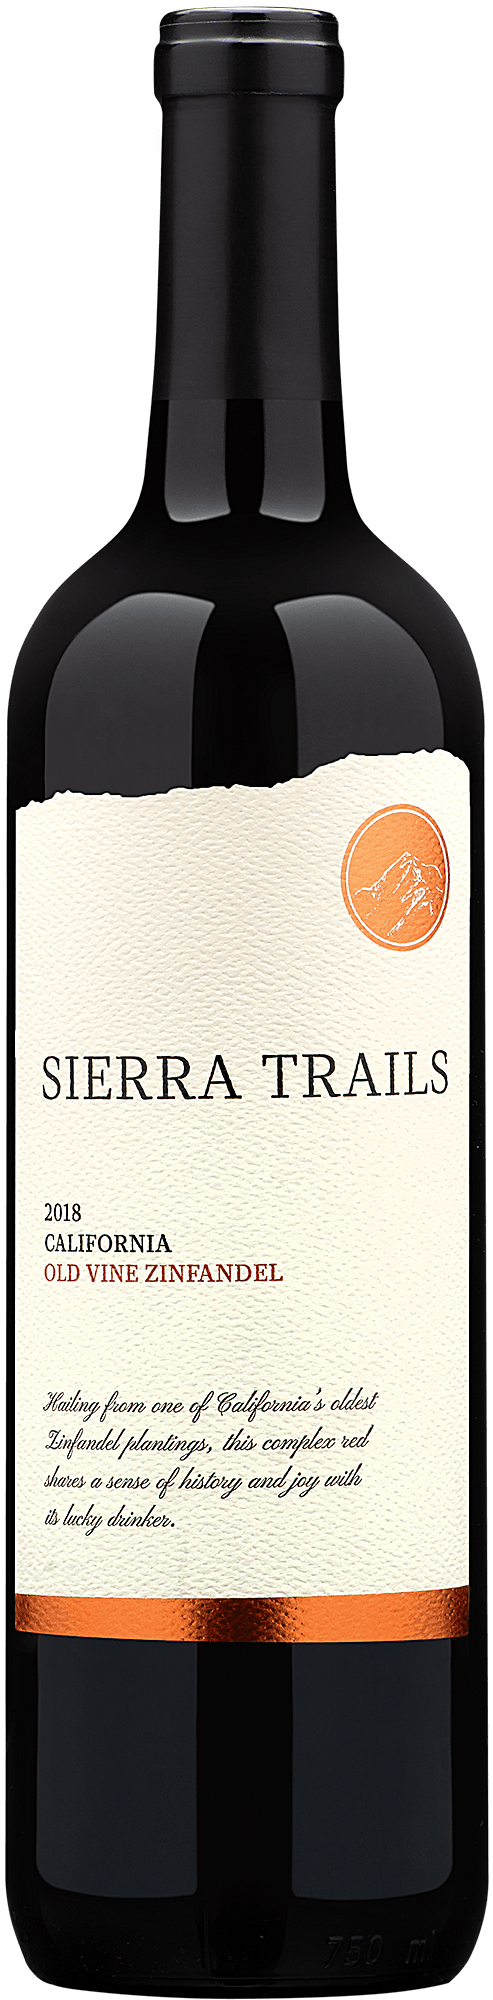 2018 Sierra Trails Old Vine Zinfandel